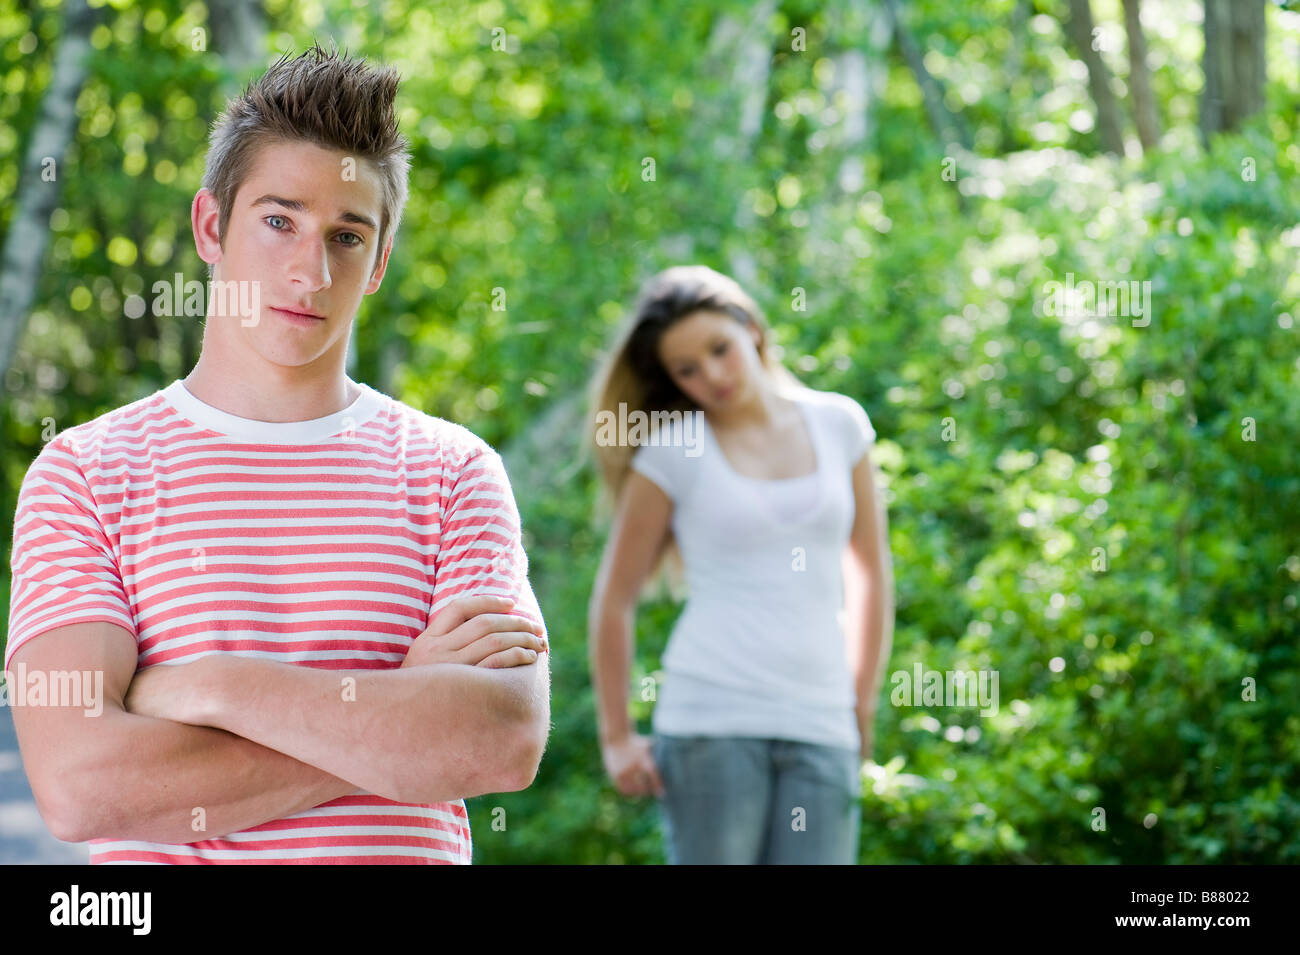 Un portrait d'un jeune homme et sa petite amie dans la distance Banque D'Images